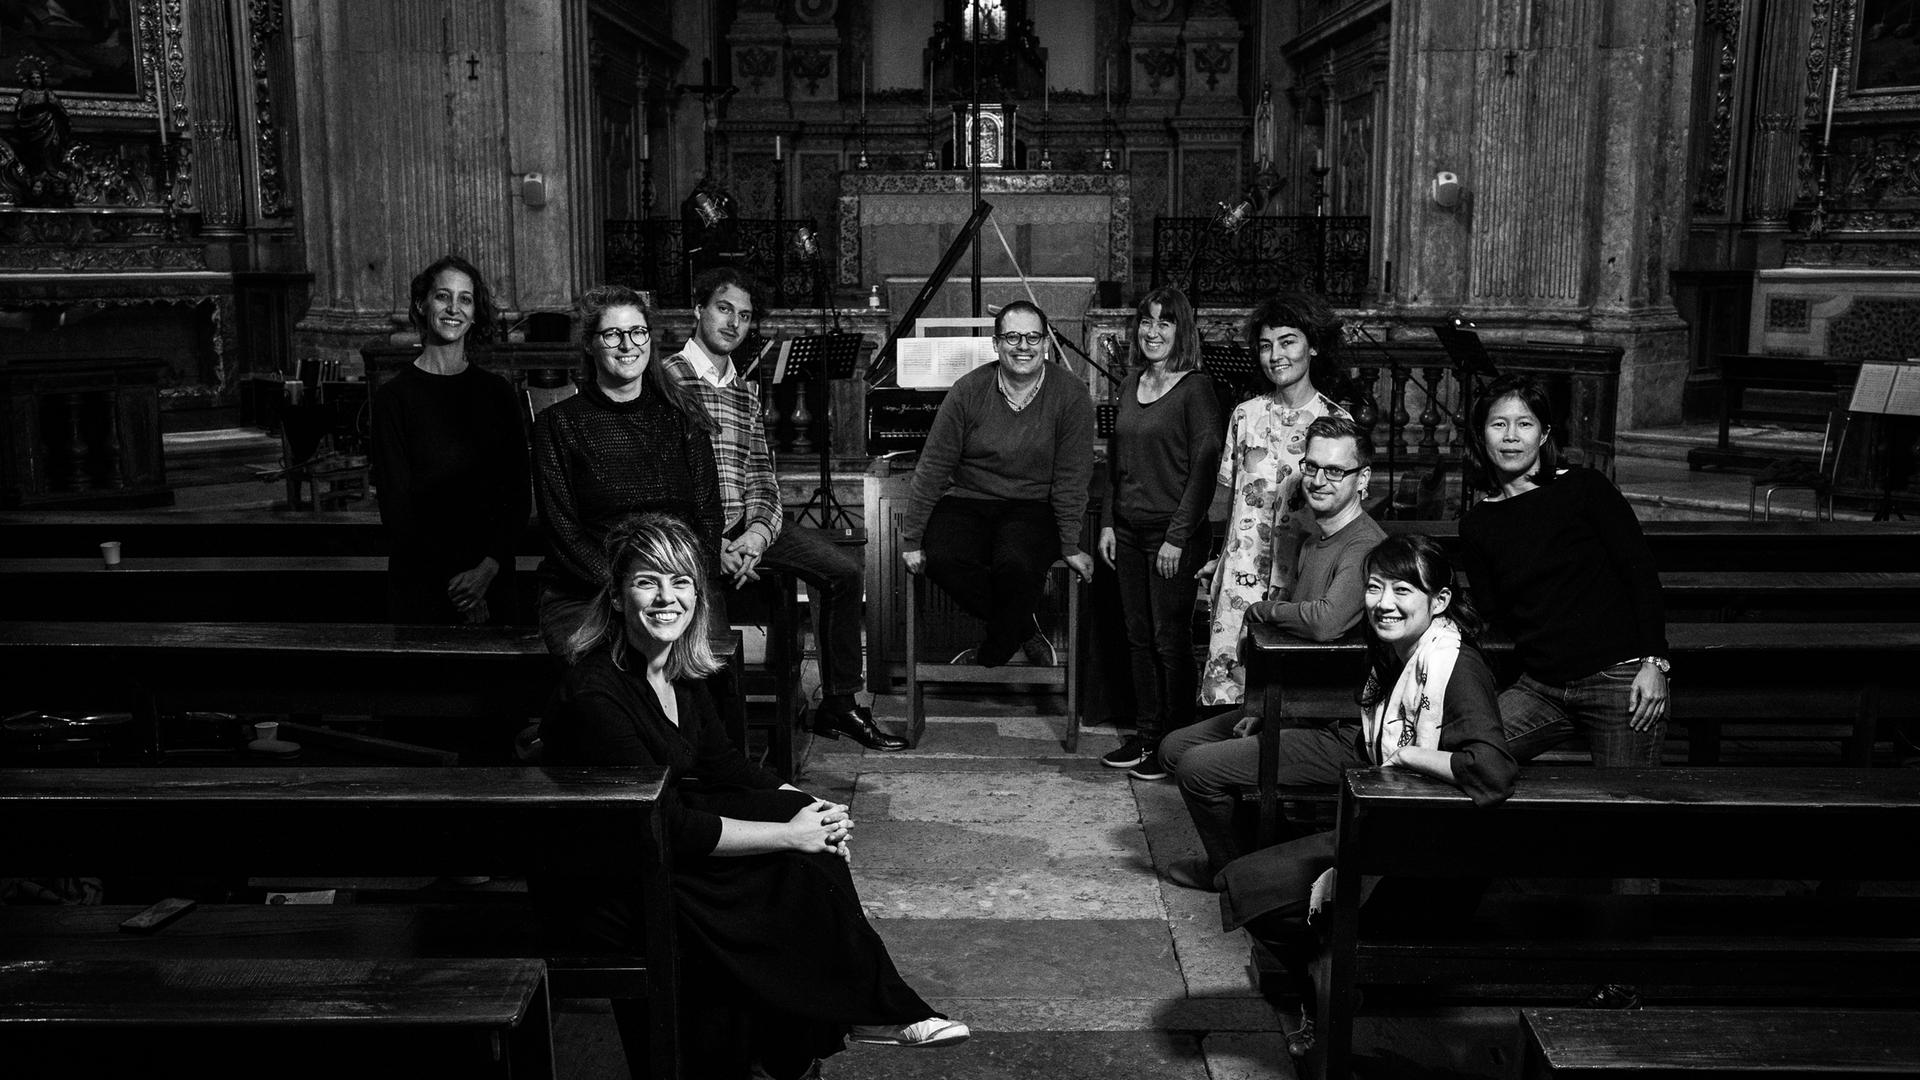 Zehn Menschen stehen in einer Kirche vor einem Altarraum, zum Teil sitzen sie auf den Kirchenbänken. Alle lächeln. Das Bild ist in schwarz-weiß-Tönen gehalten.